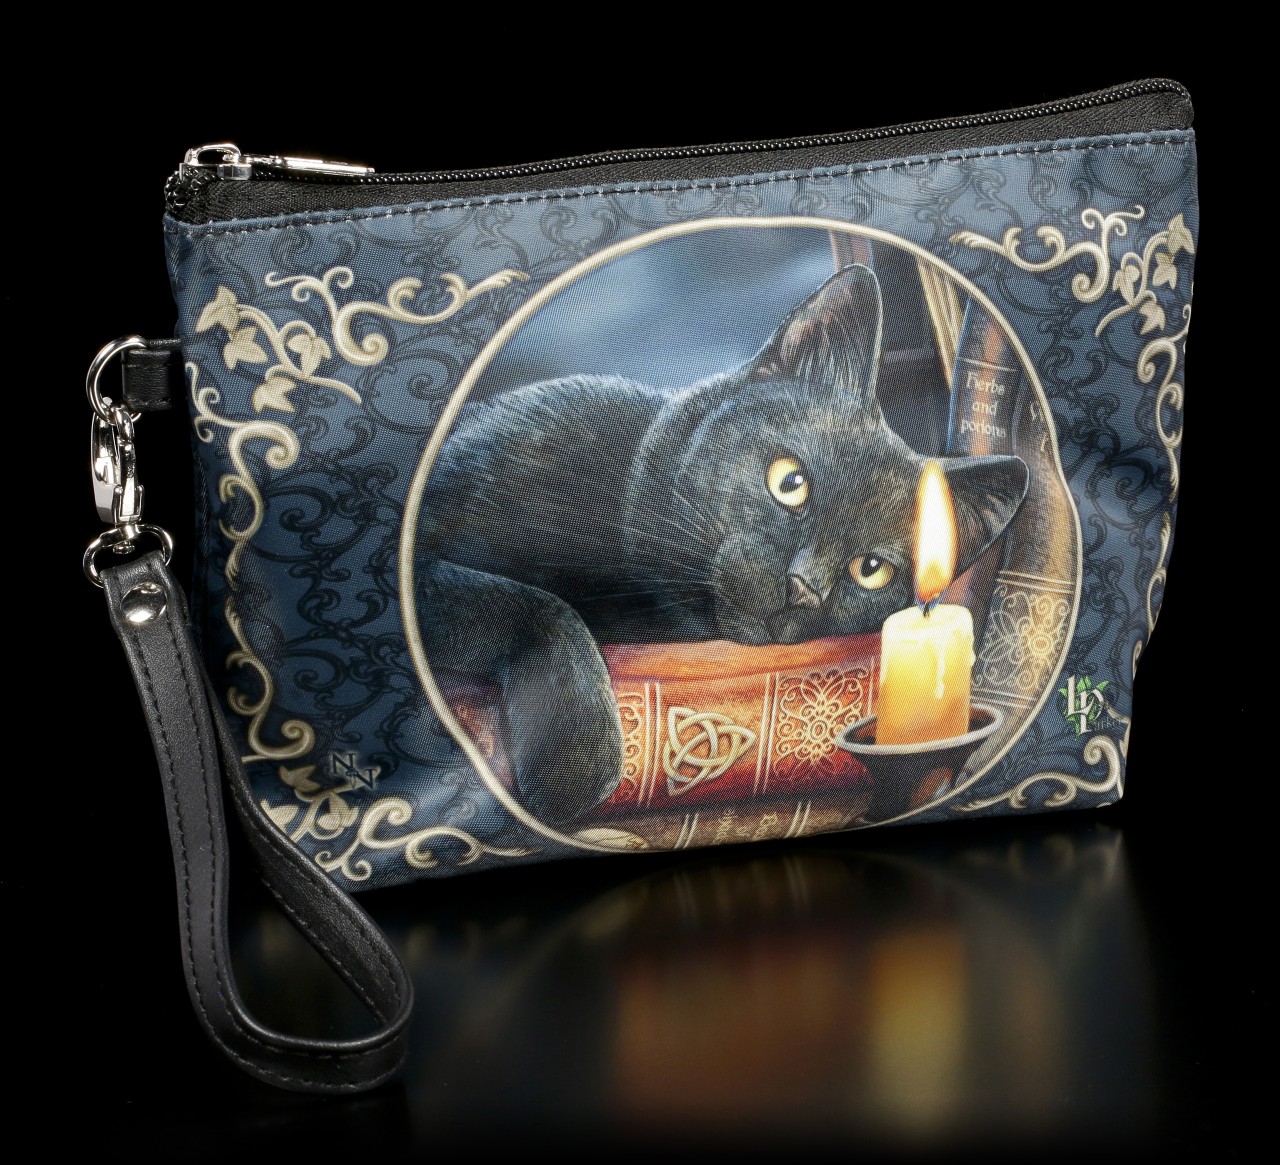 Kulturtasche mit Katze - Witching Hour